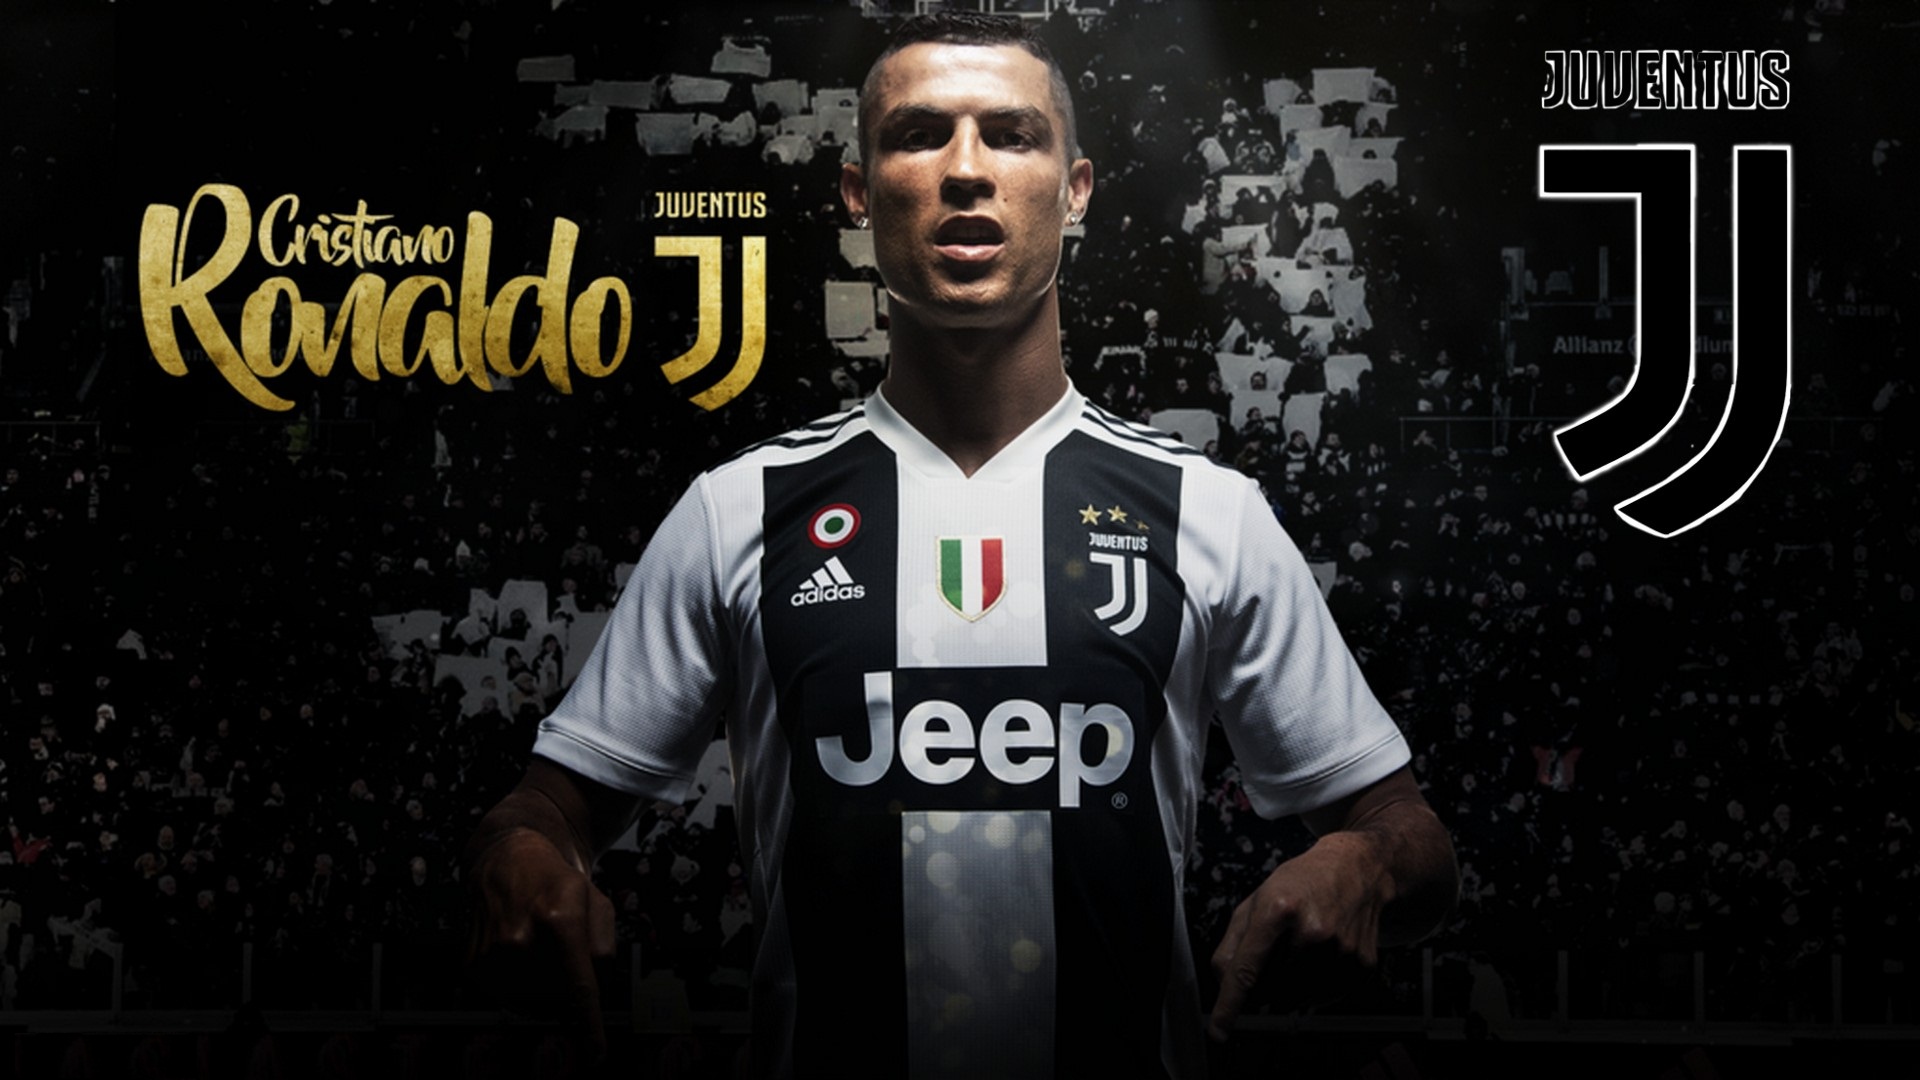 Juventus là đội bóng mà Ronaldo đang thi đấu, hãy thể hiện sự ủng hộ cho siêu sao bằng cách trang trí máy tính của bạn với Hình nền Ronaldo Juventus đầy màu sắc và sức sống.